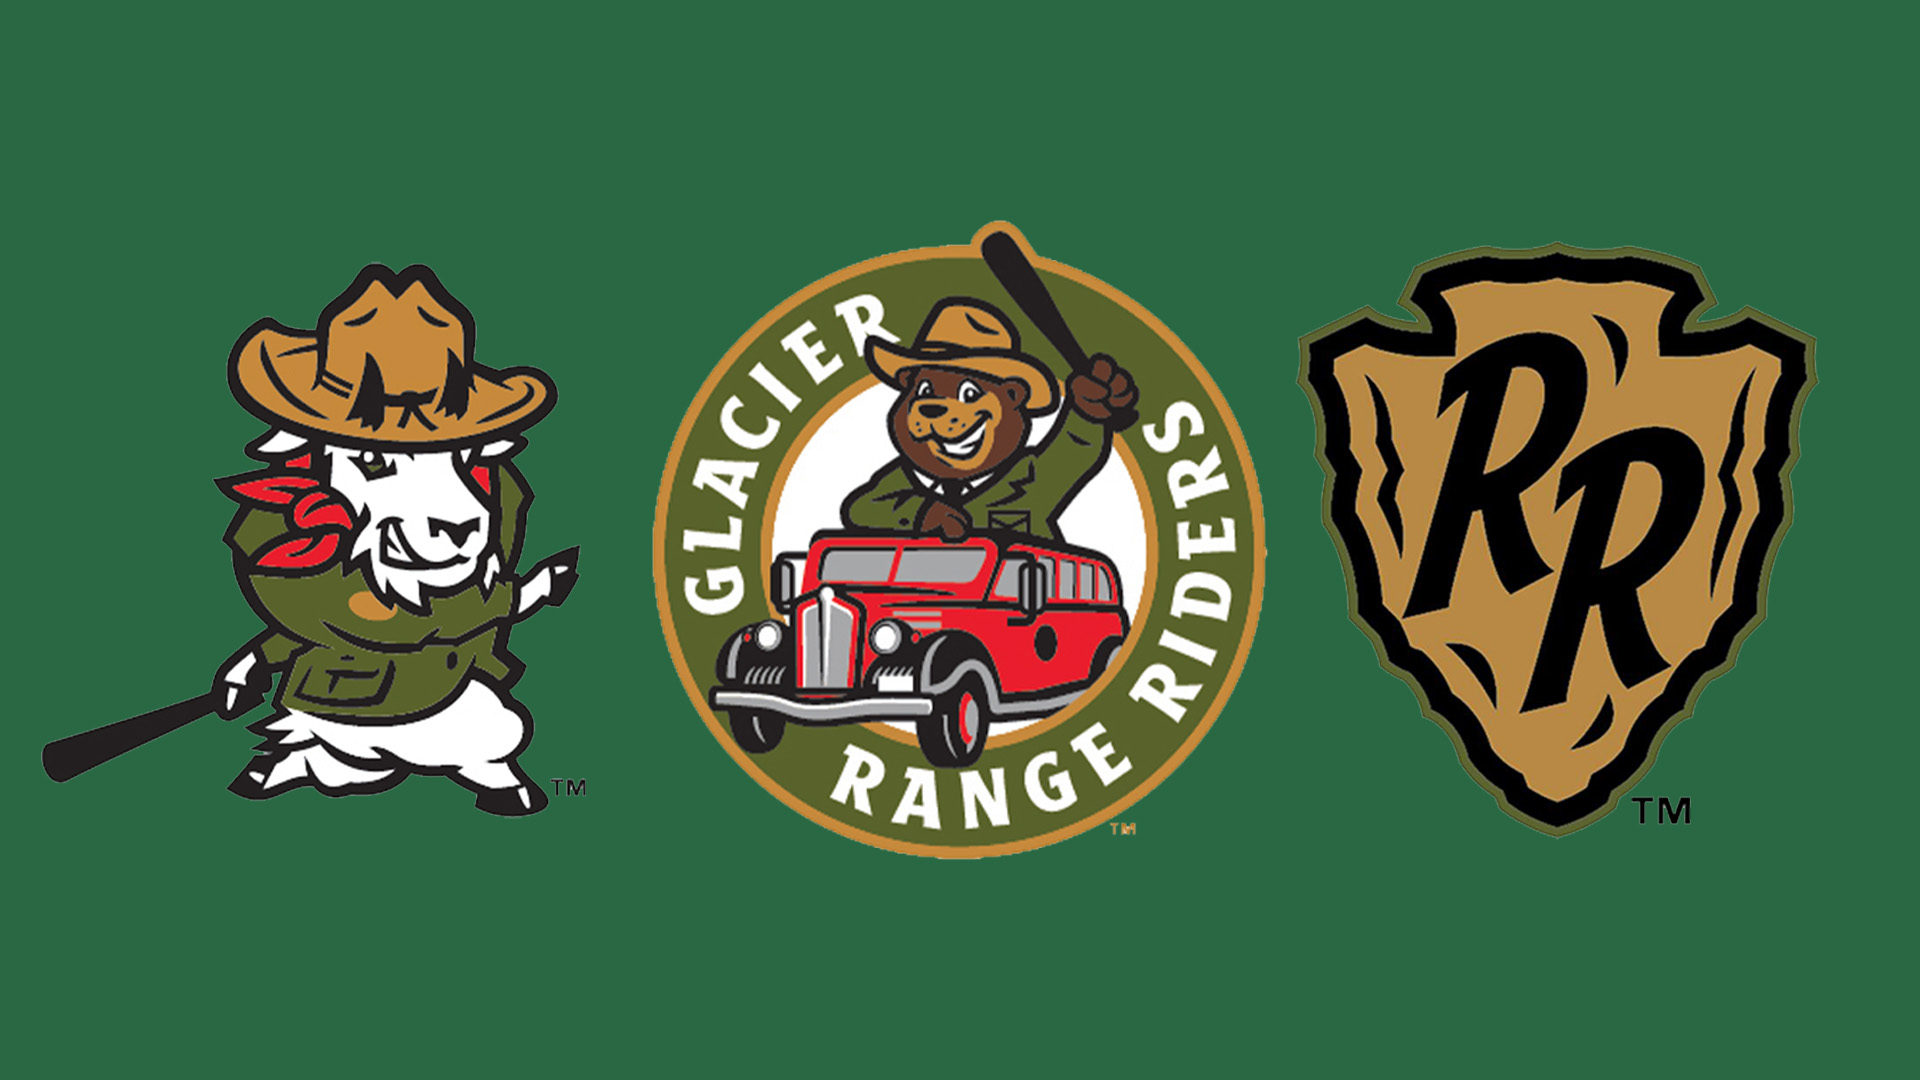 Glacier Range Riders logos